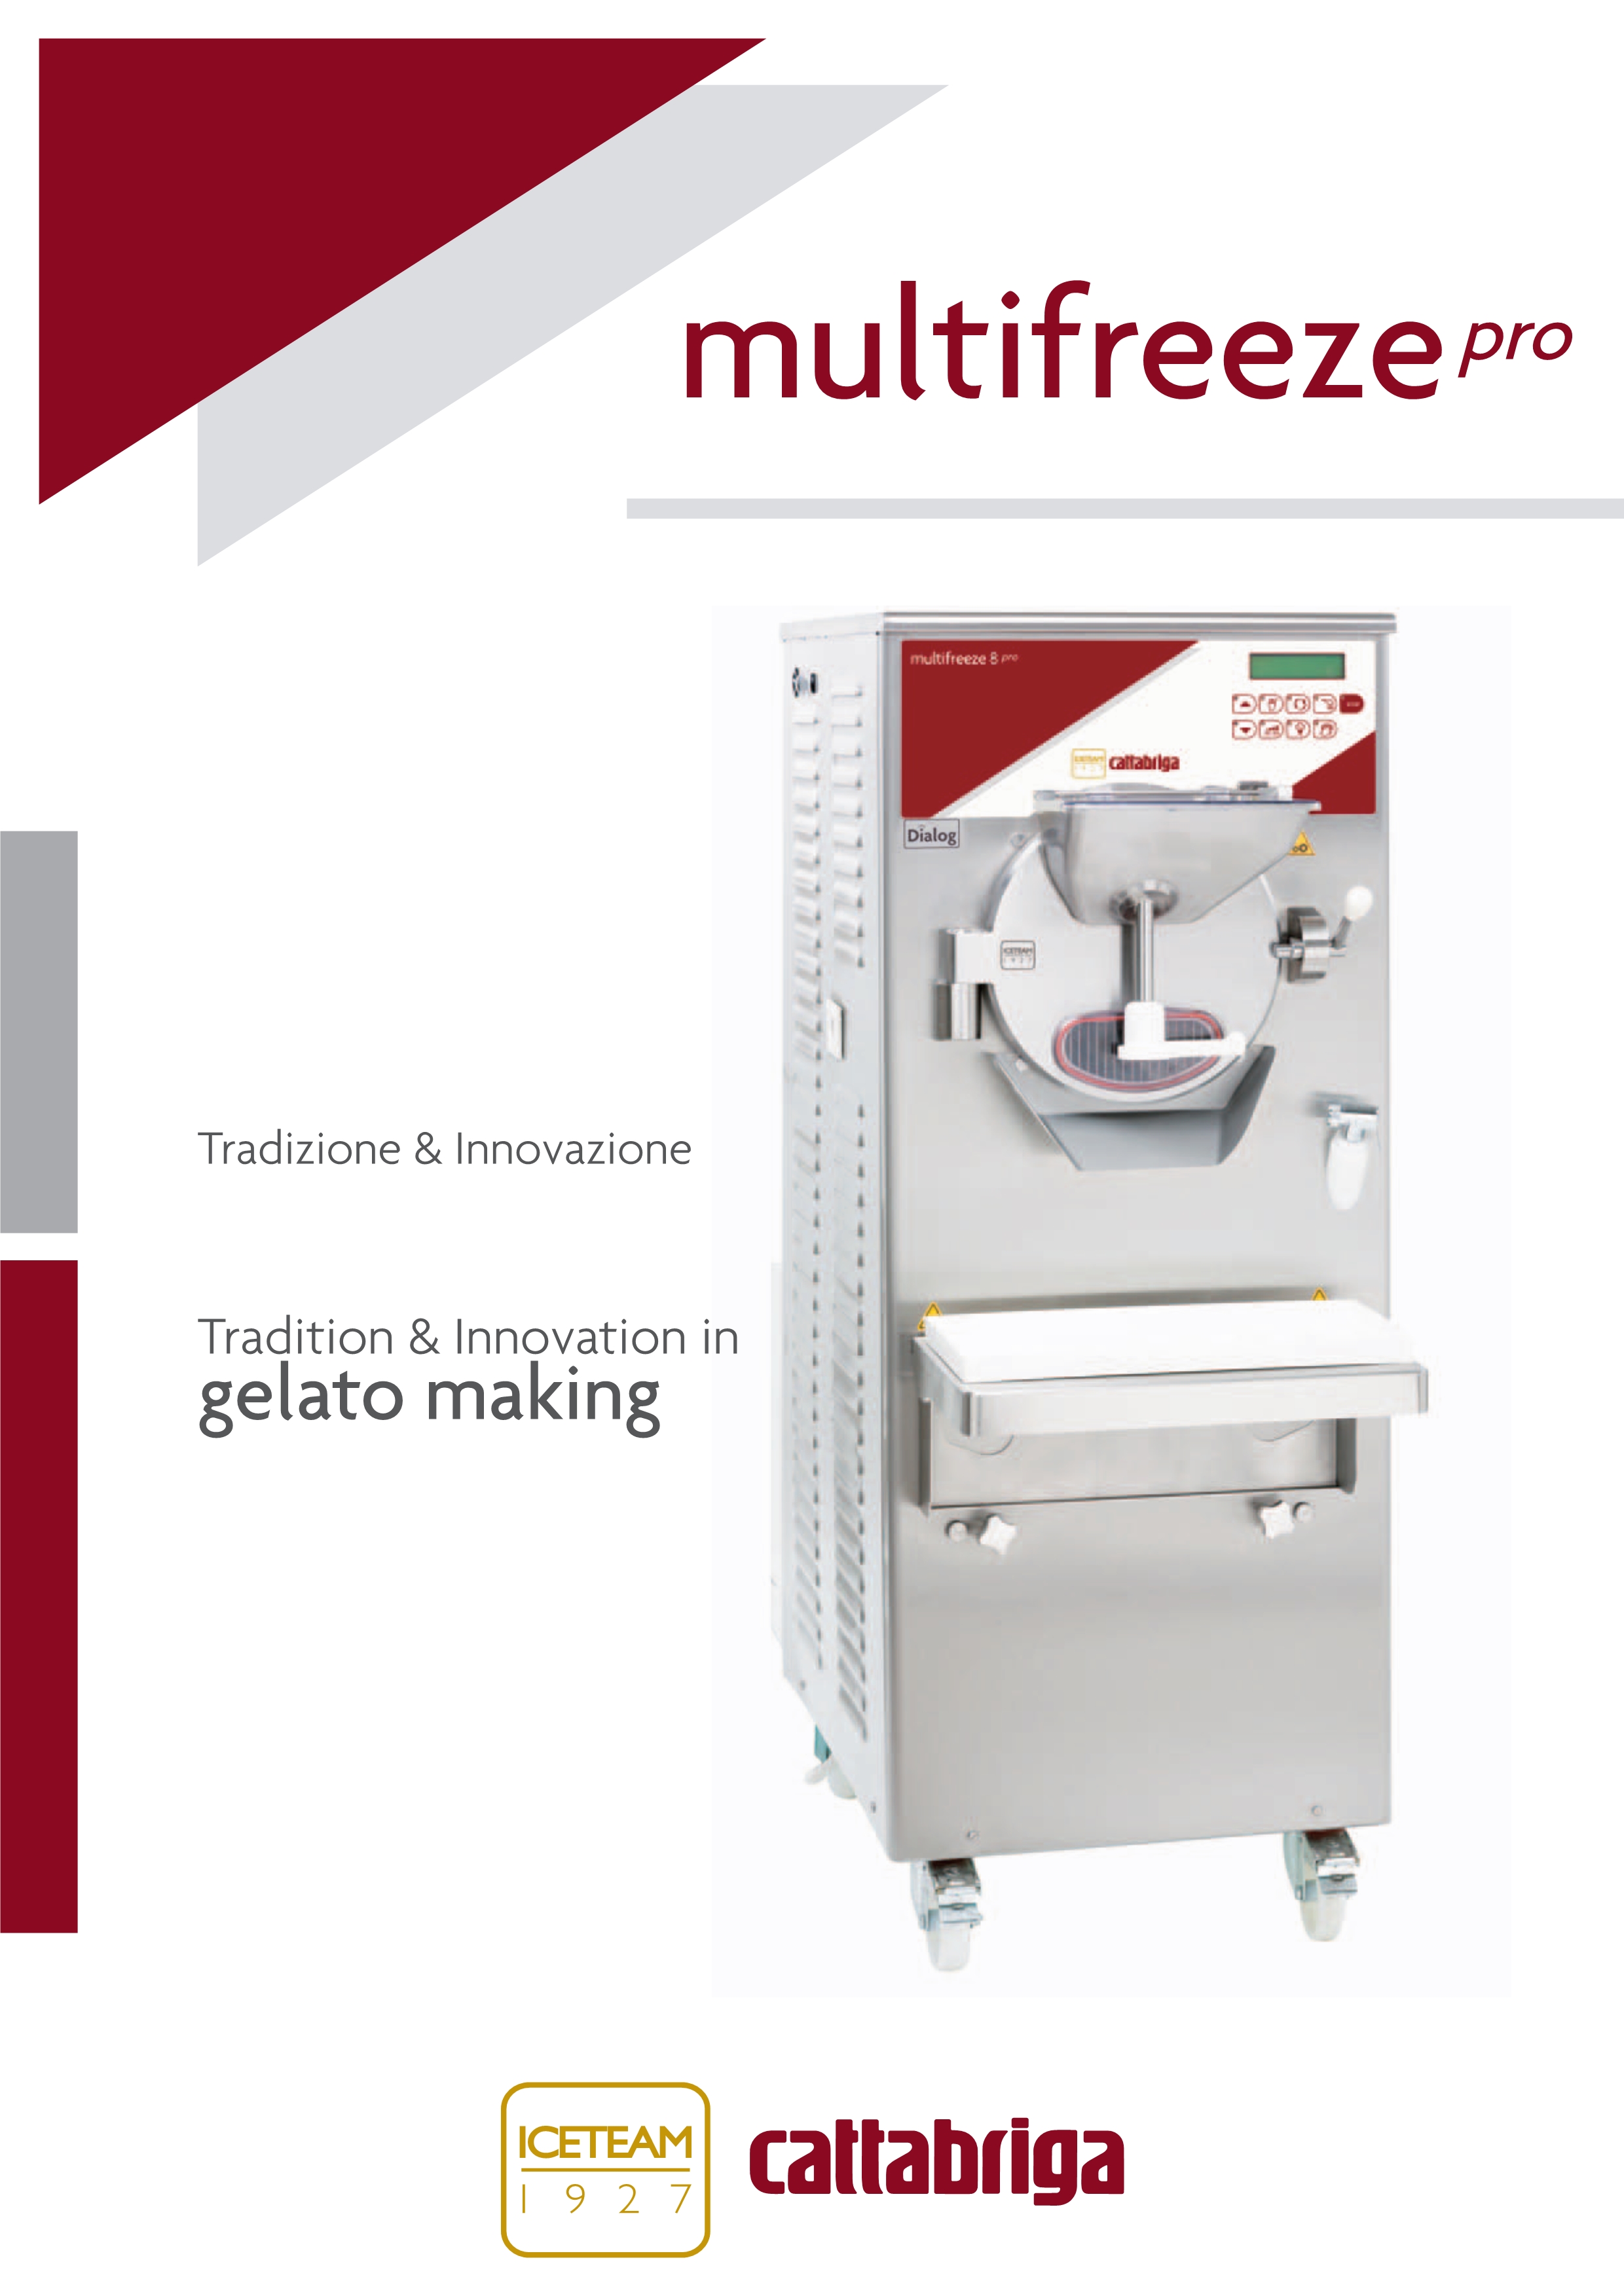 意大利冰淇淋机Multifreeze Pro